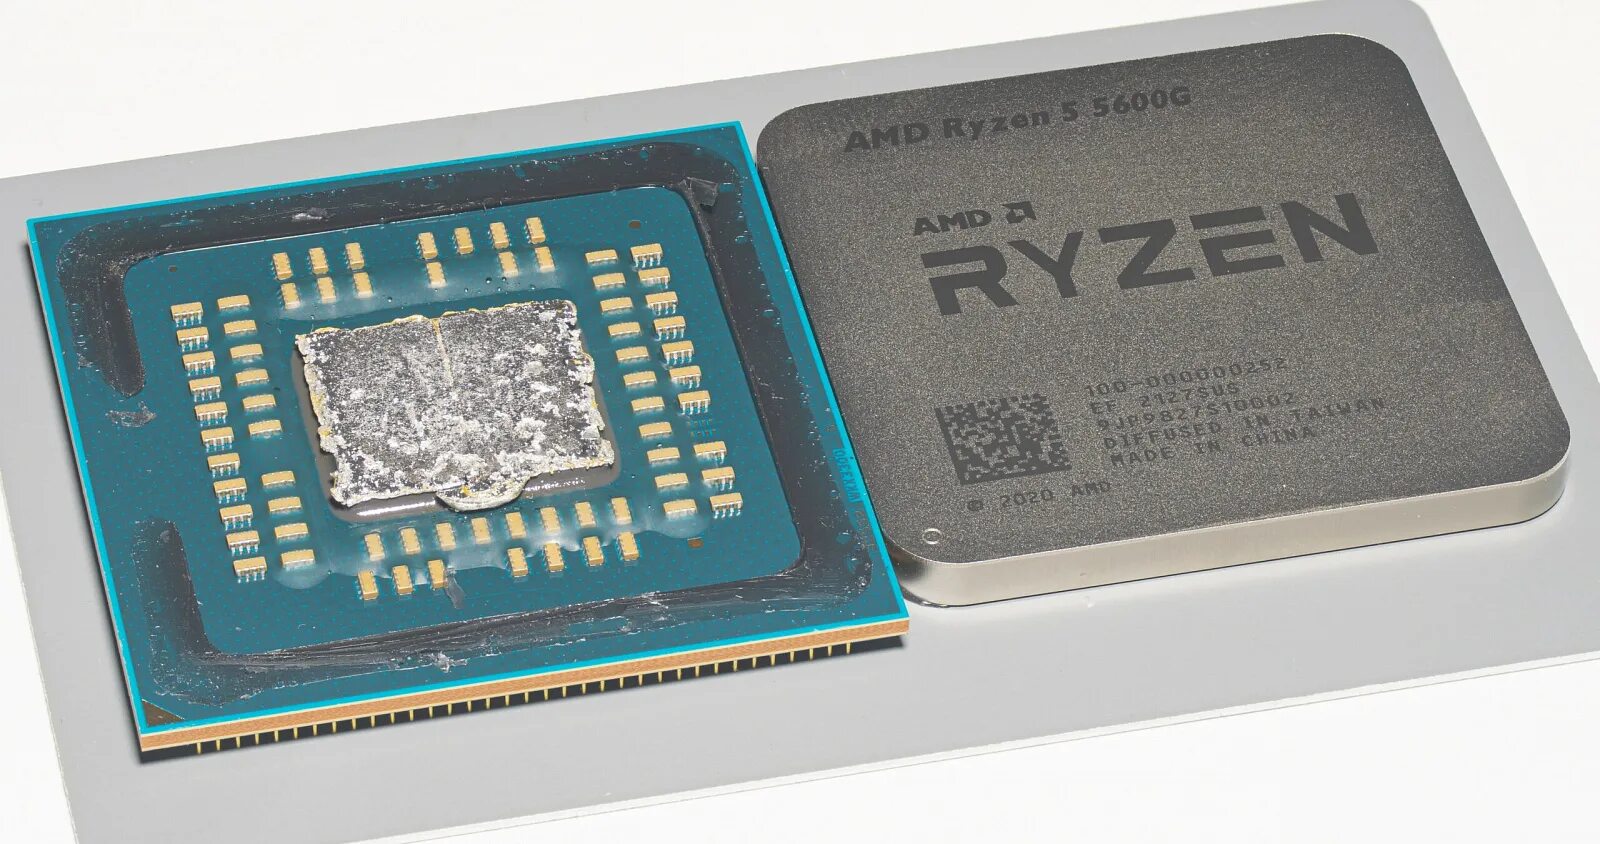 Модели процессоров ryzen. Процессор AMD Ryzen 5 5600x. Ryzen 5 5600g Кристалл. Процессор AMD Ryzen 7 5600g. Ryzen 5 5600g под крышкой процессора.